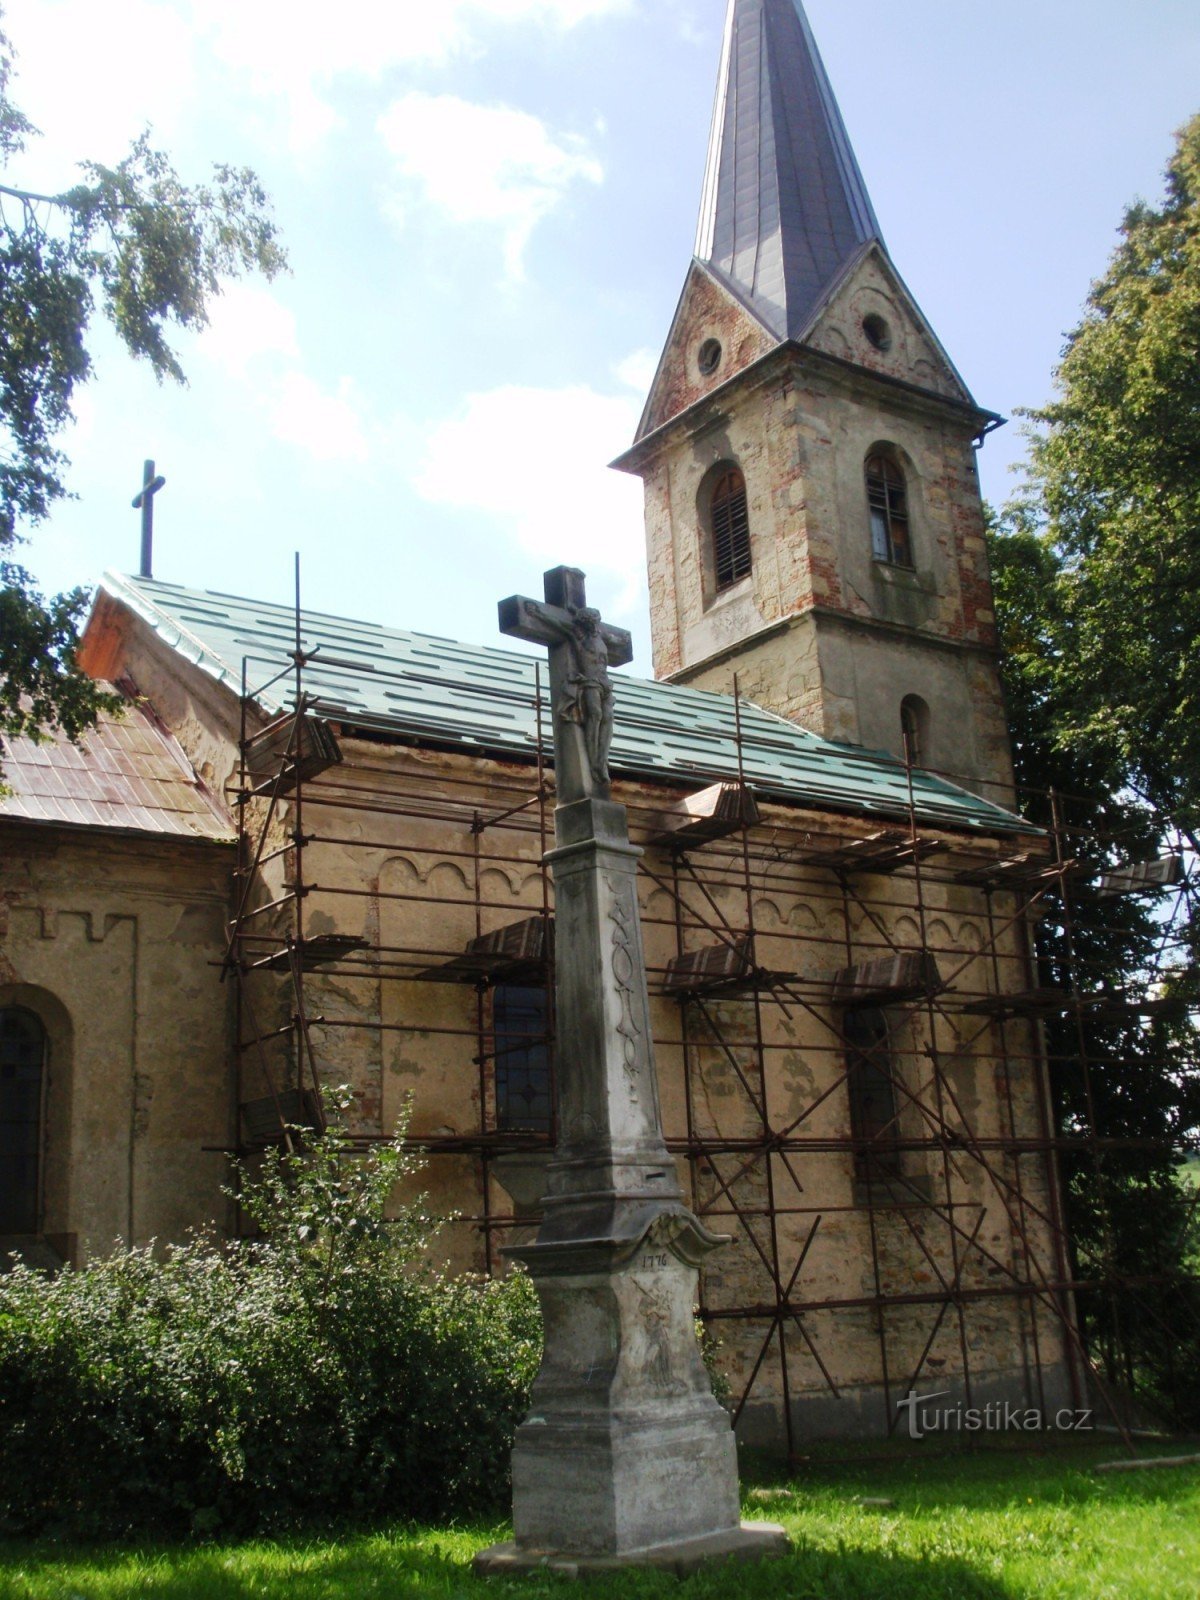 Аненский колодец, церковь св. лавровое дерево